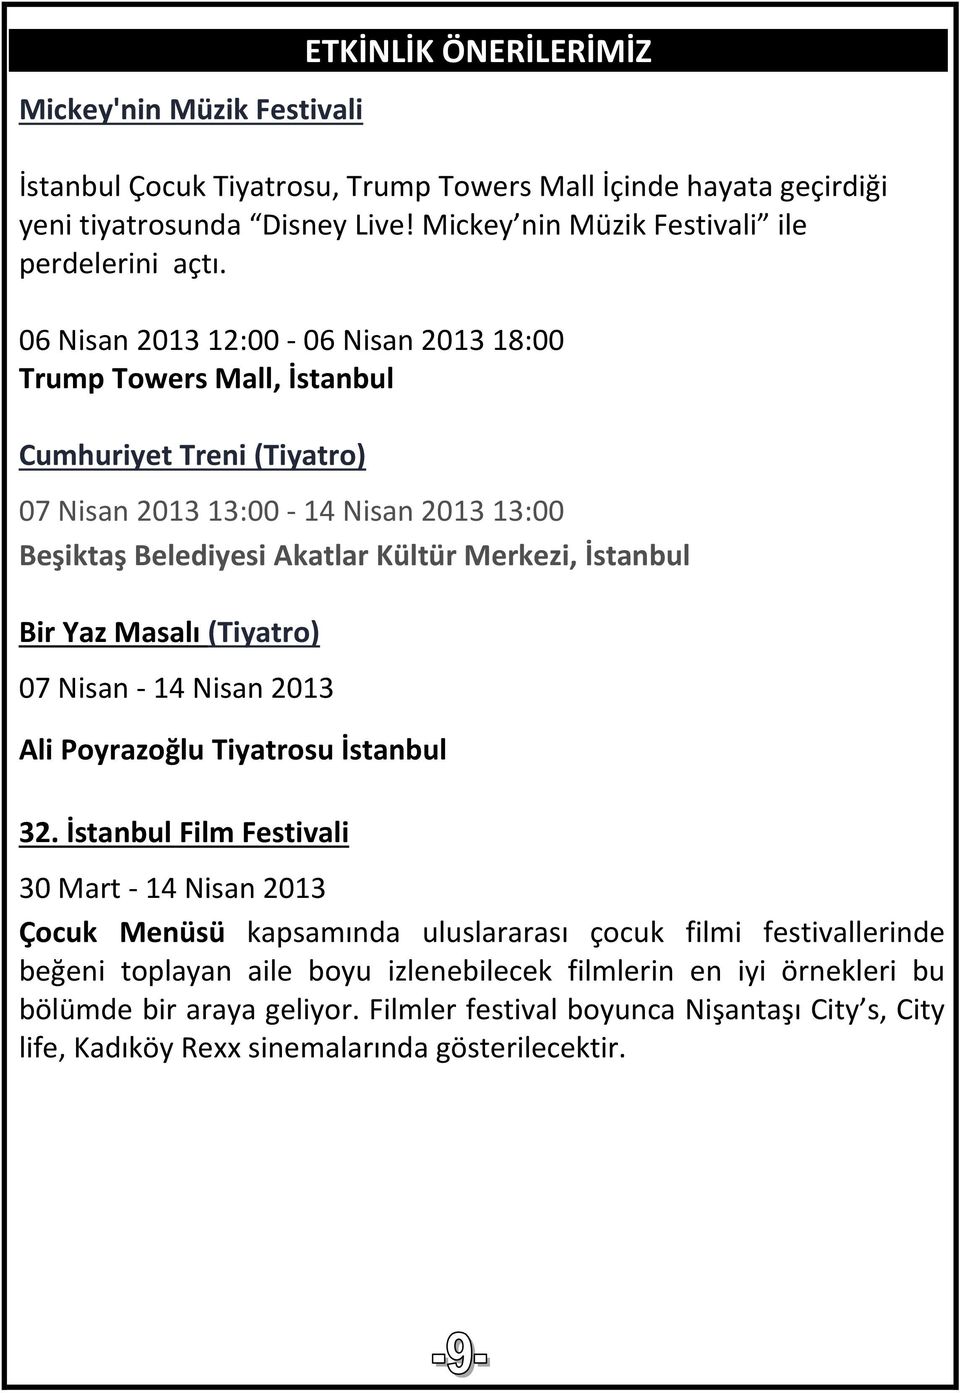 06 Nisan 2013 12:00-06 Nisan 2013 18:00 Trump Towers Mall, İstanbul Cumhuriyet Treni (Tiyatro) 07 Nisan 2013 13:00-14 Nisan 2013 13:00 Beşiktaş Belediyesi Akatlar Kültür Merkezi, İstanbul Bir